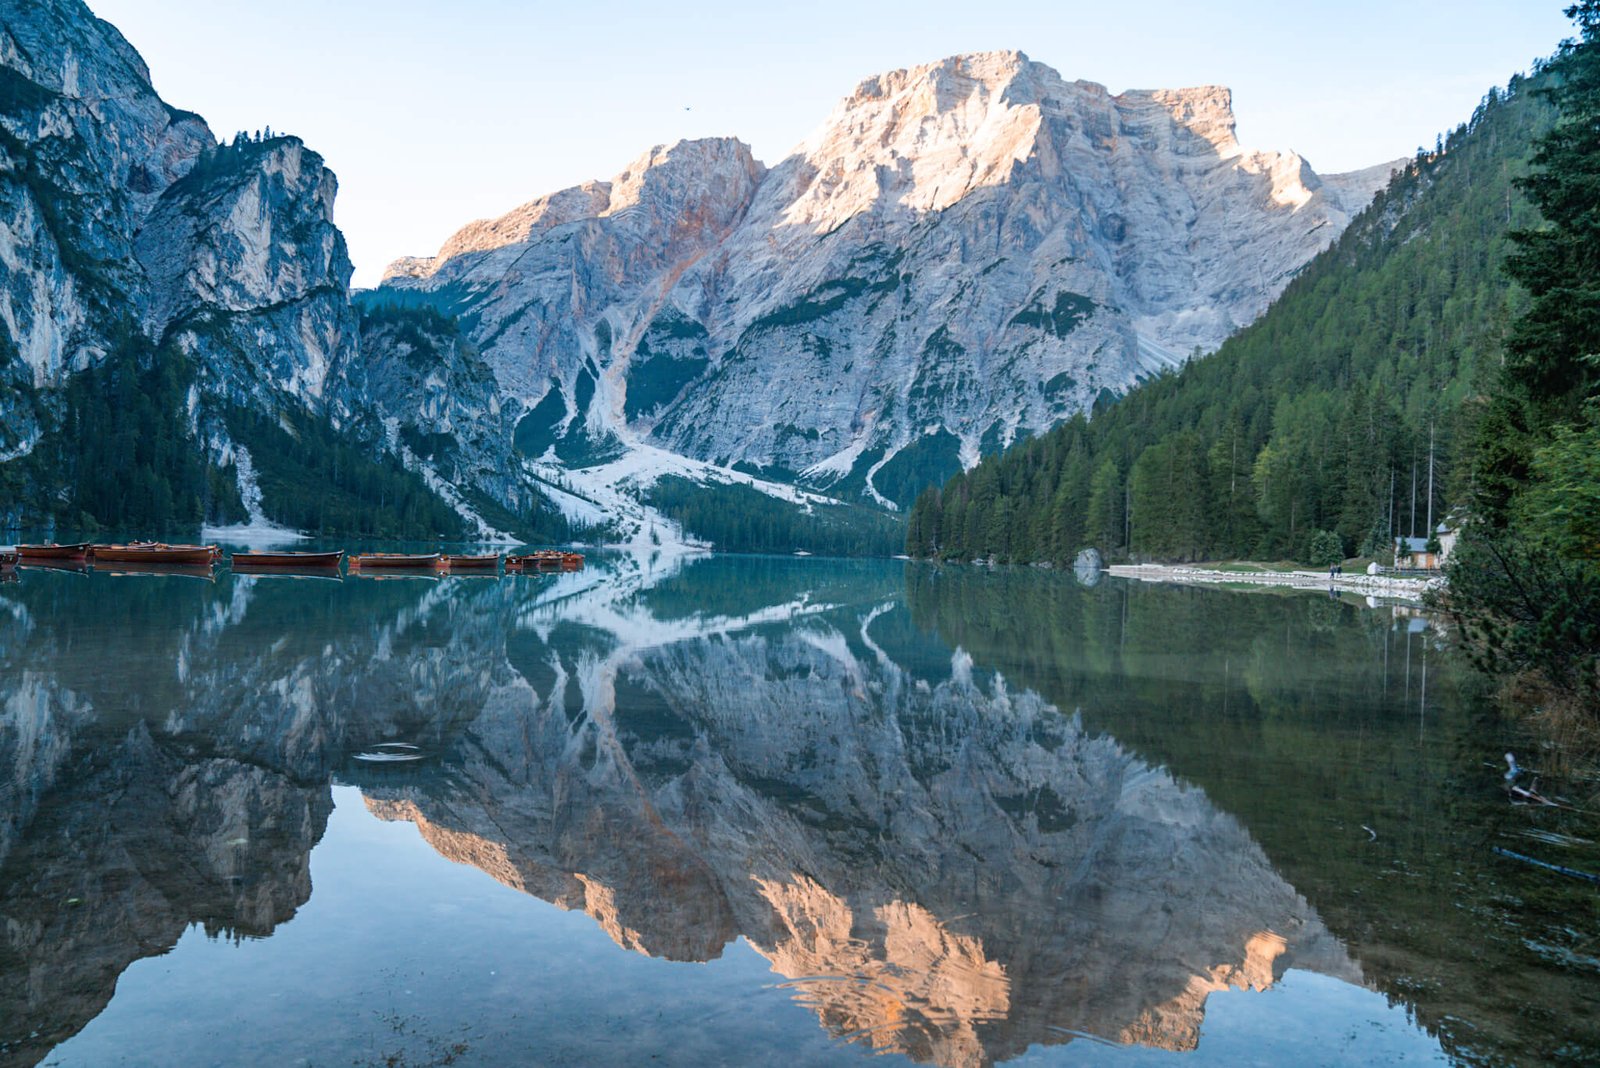 Lago di Braies in the Dolomites